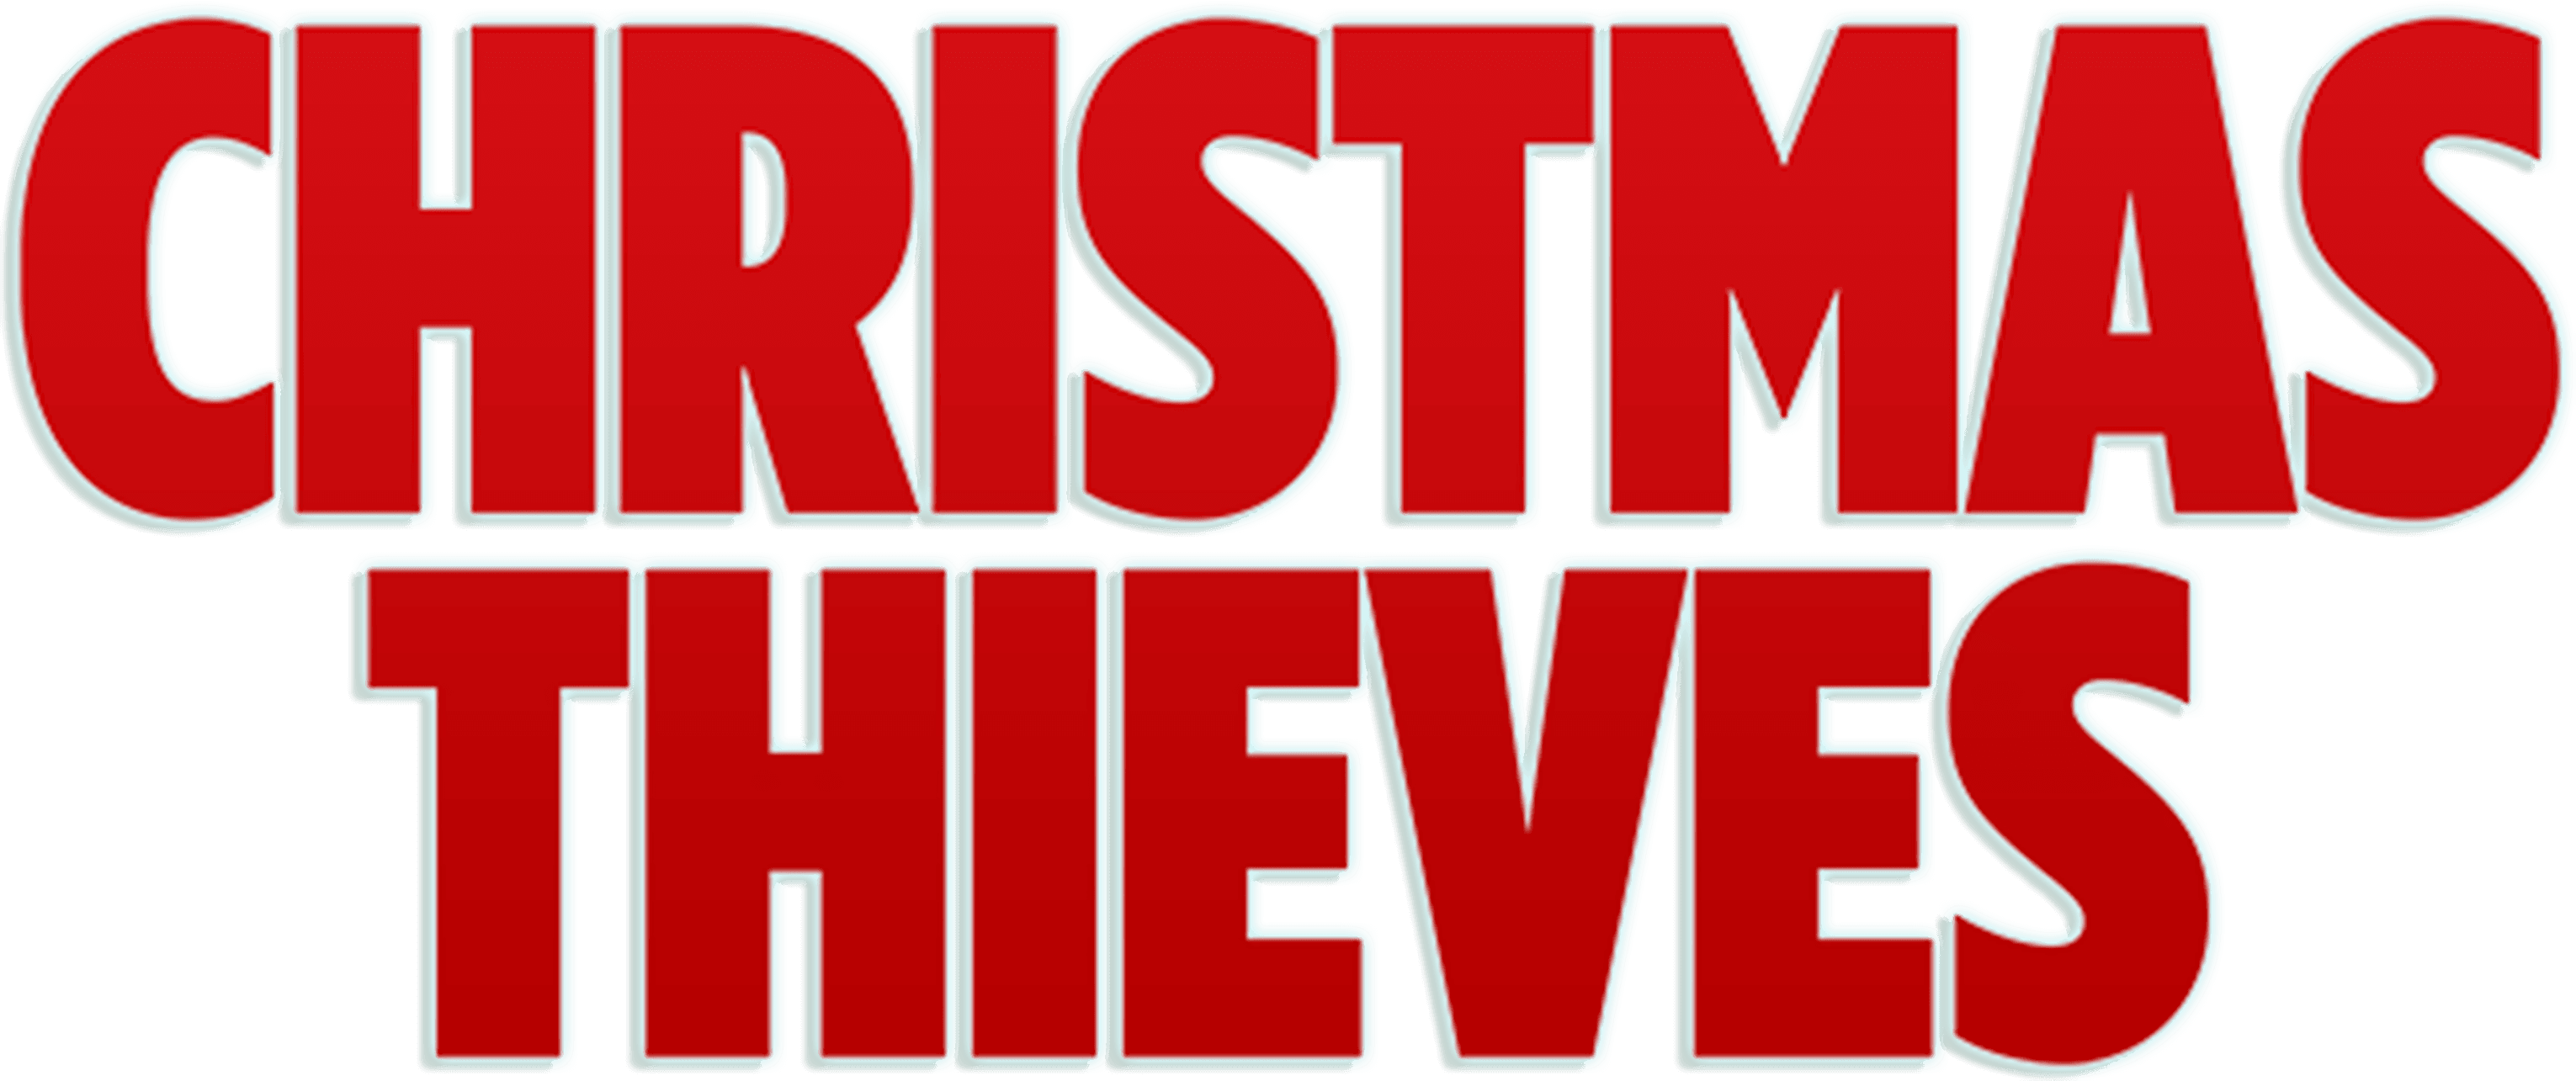 Christmas Thieves logo